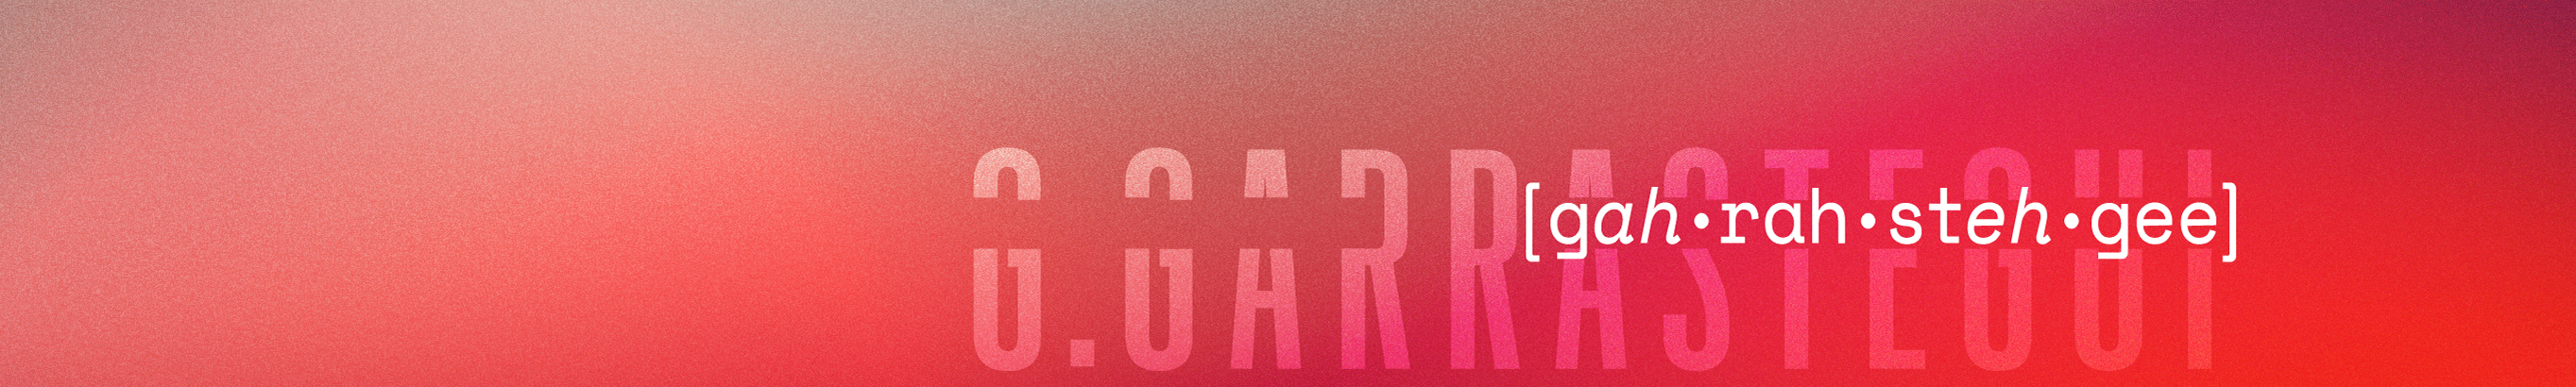 George Garrastegui Jr's profile banner